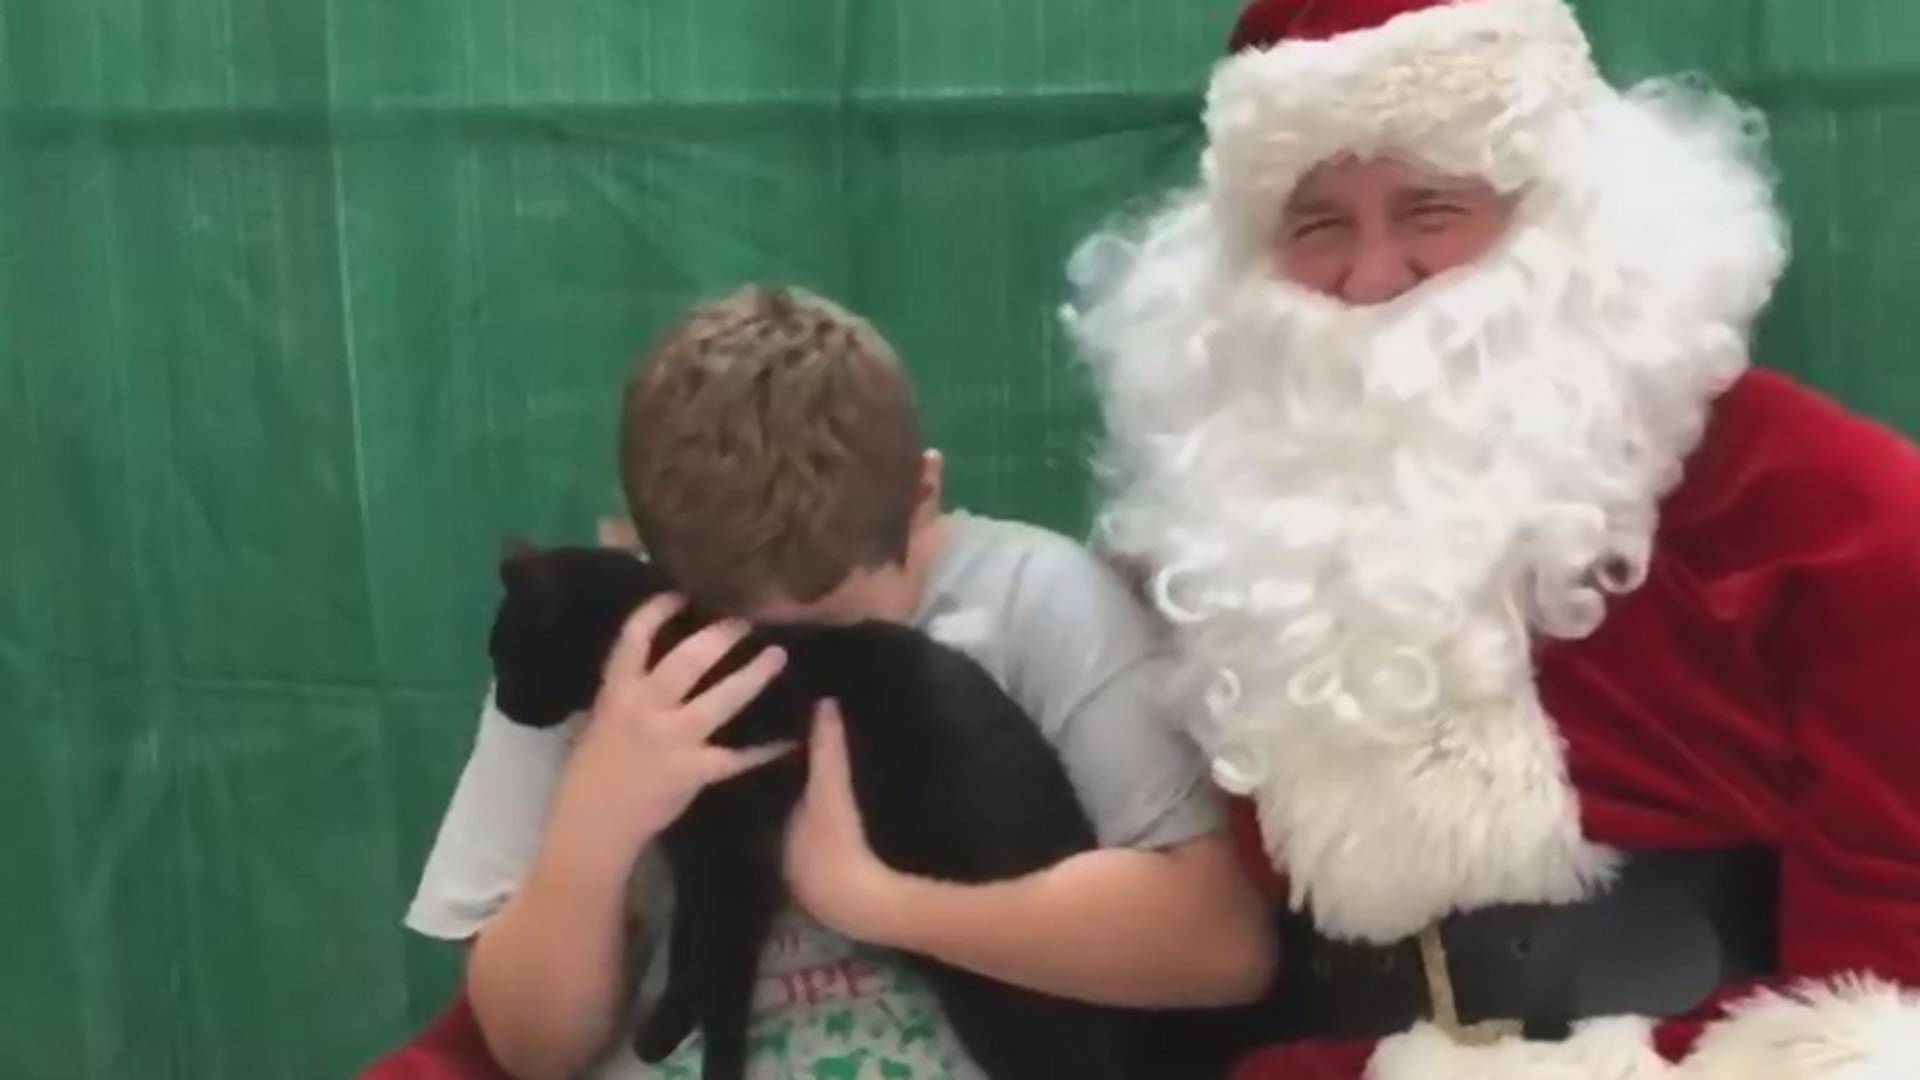 Bírd ki sírás nélkül! Így reagált a kisfiú a Mikulástól kapott cicára – VIDEÓ